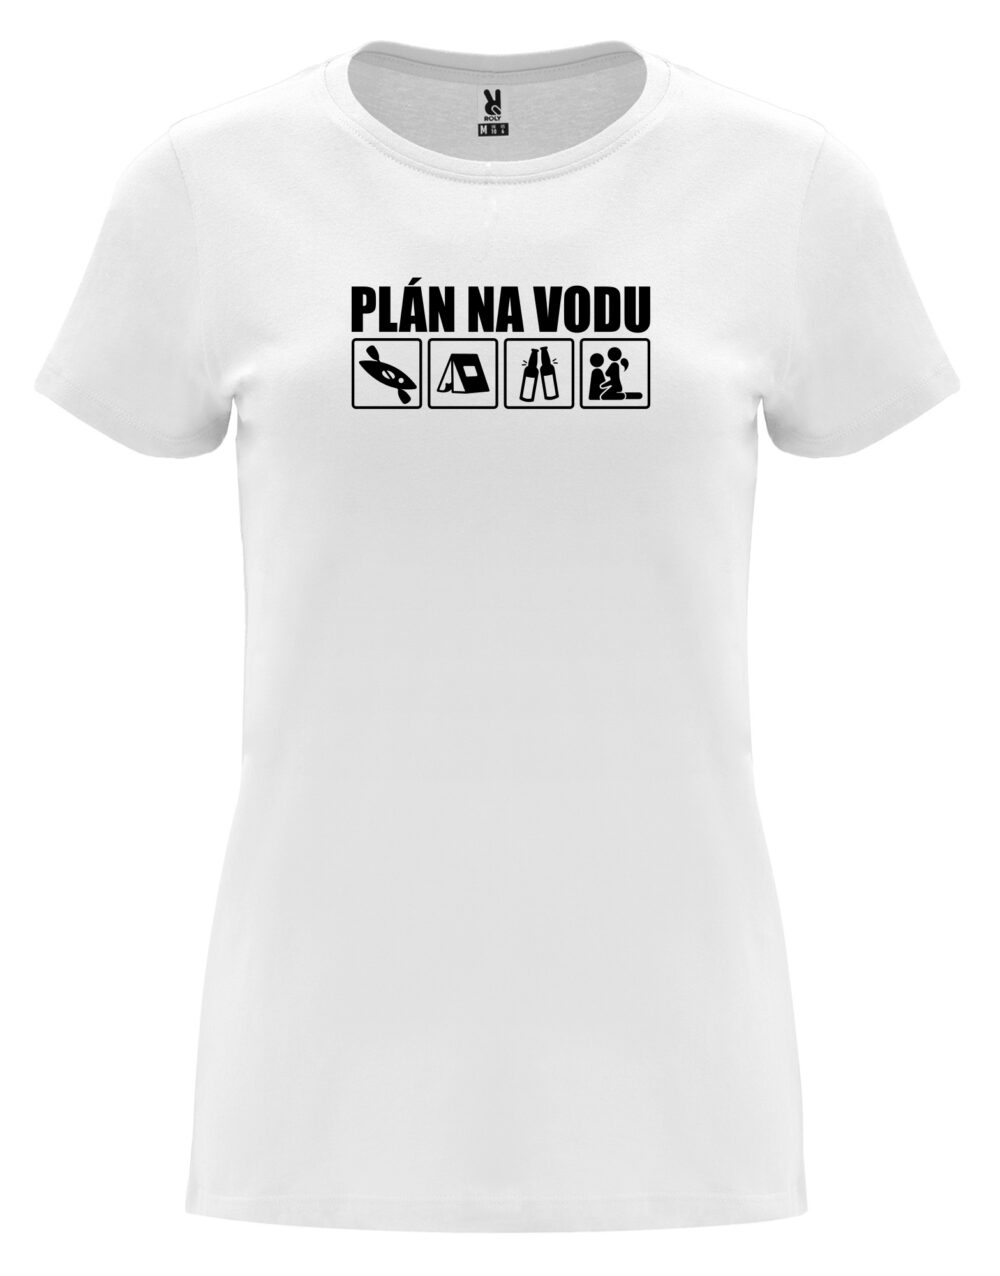 Dámské tričko s potiskem Plán na vodu bílá